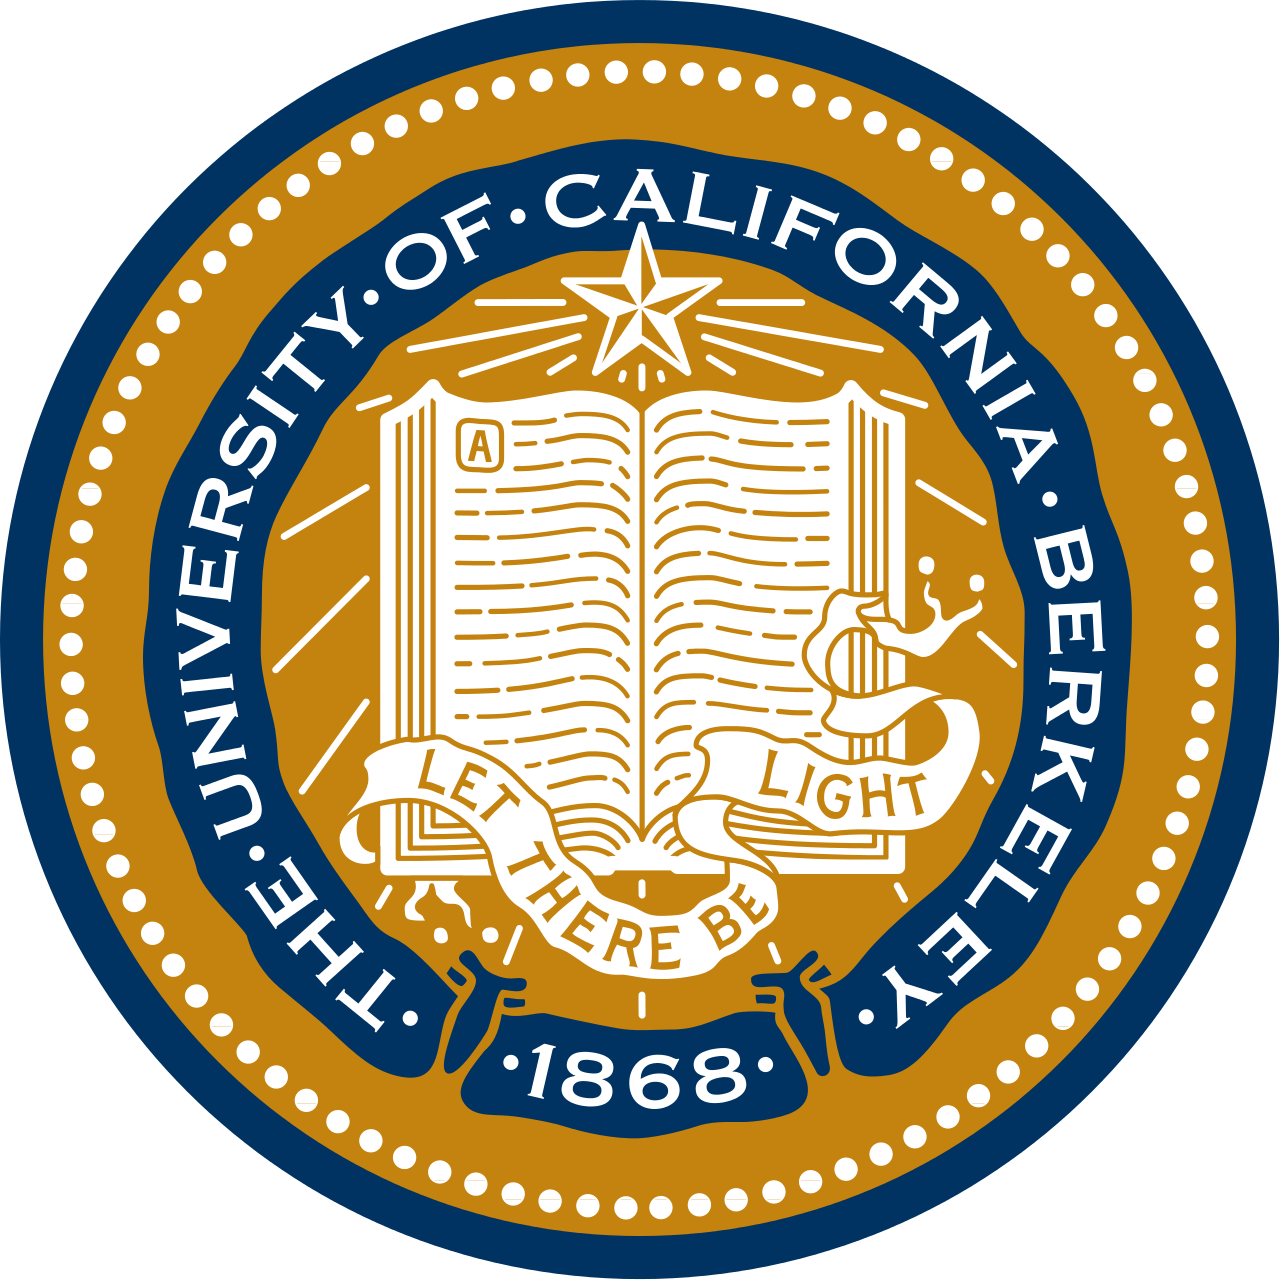 UC Berkeley, Berkeley Cal - University of California, Berkeley - California Berkeley University of California - Калифорнийский университет в Беркли